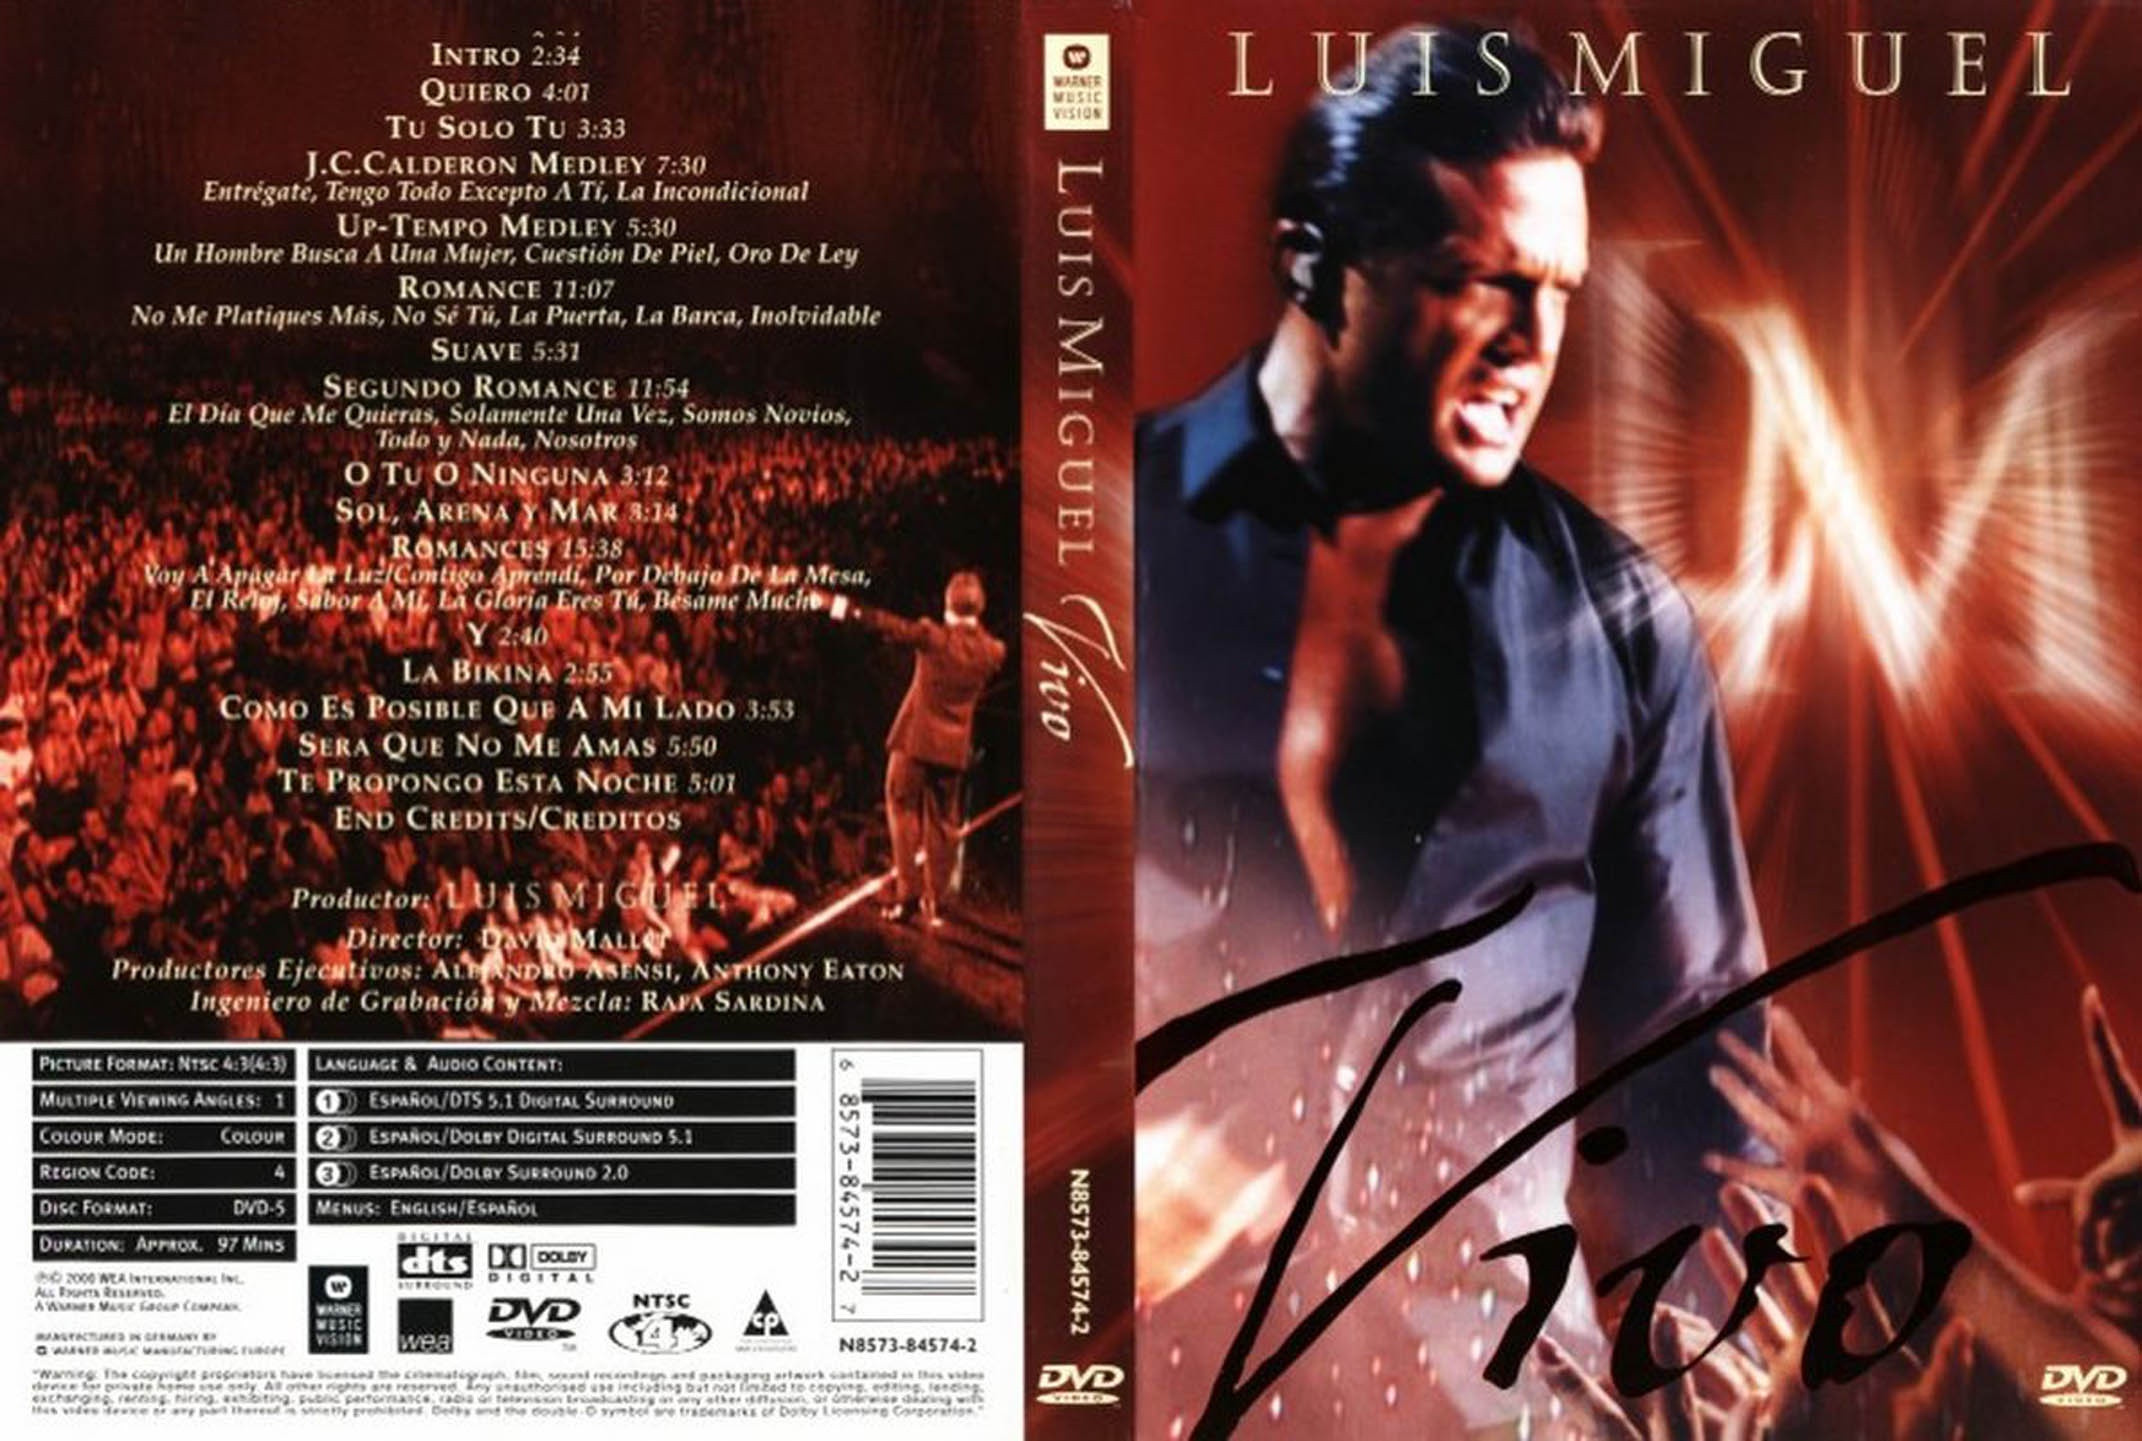 Luis Miguel Vivo - 2000 - Dvd5 - [Mega]